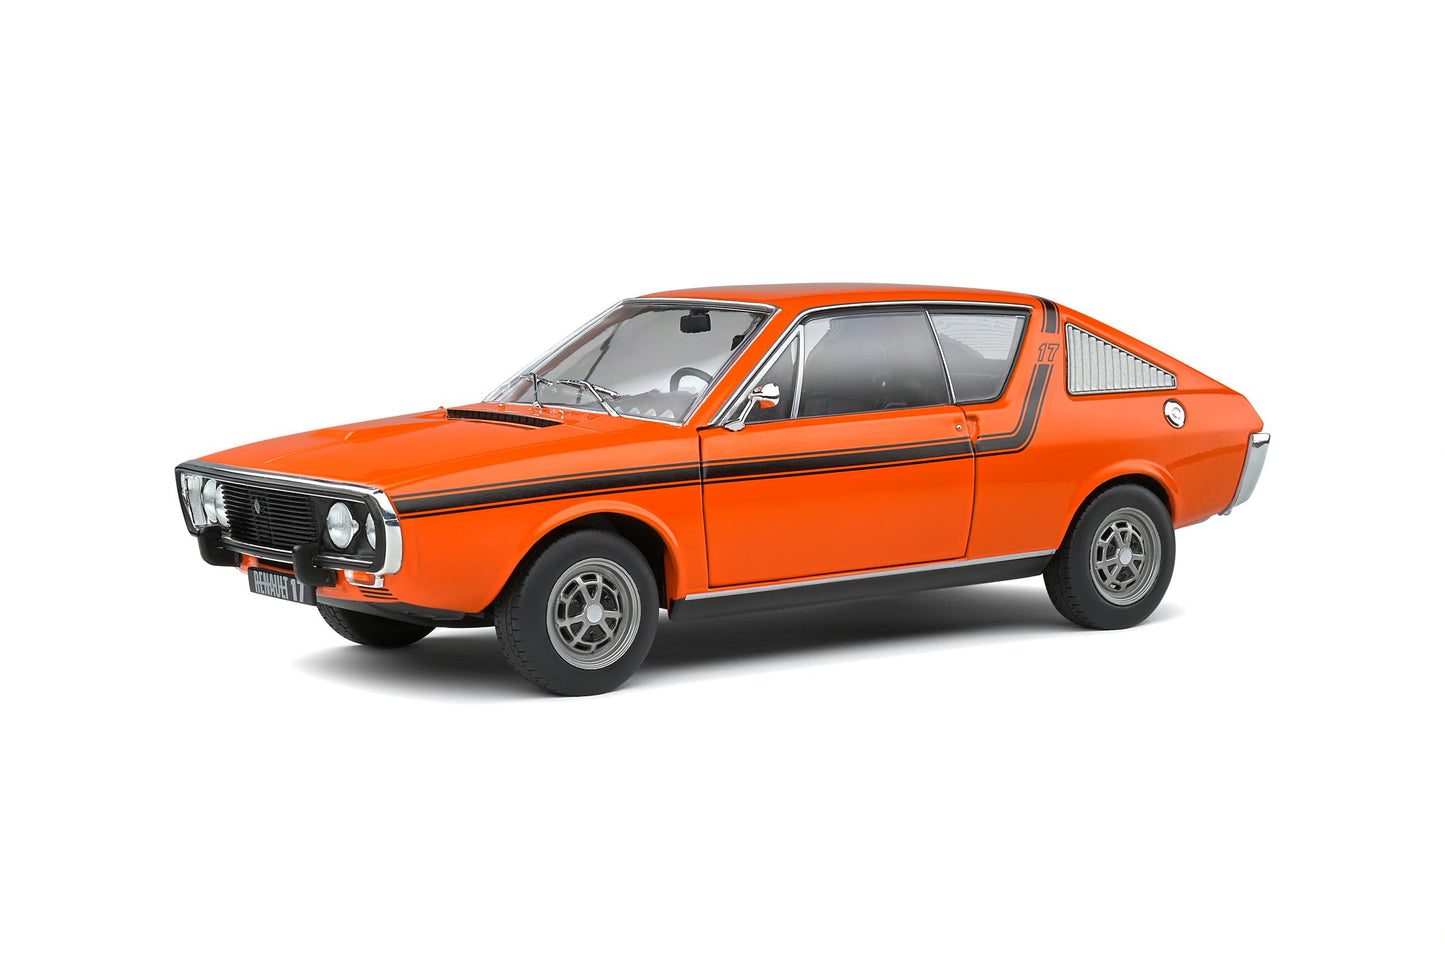 1:18 Renault R17 MK1, 1976, orange, Solido 1803705, delvis åben model